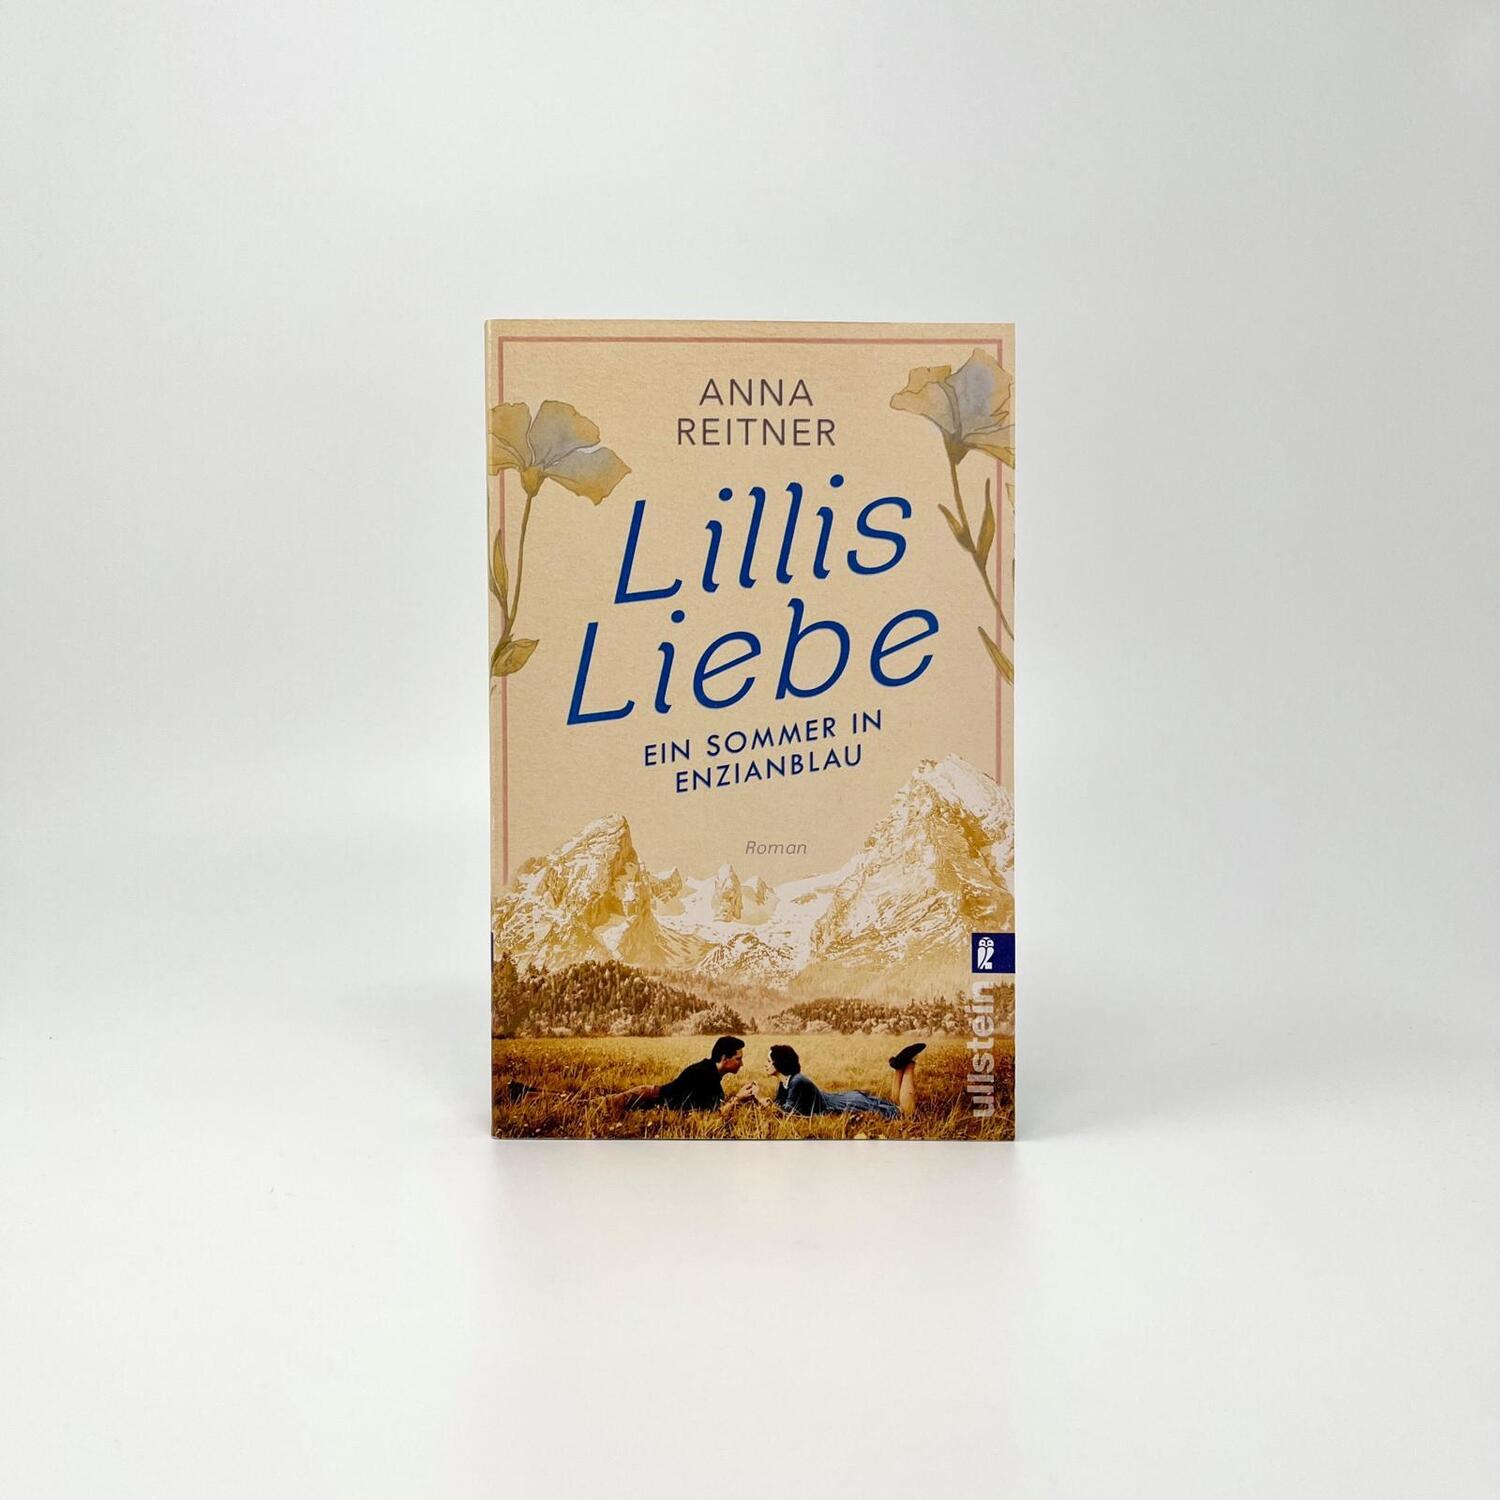 Bild: 9783548064888 | Lillis Liebe - Ein Sommer in Enzianblau | Anna Reitner | Taschenbuch